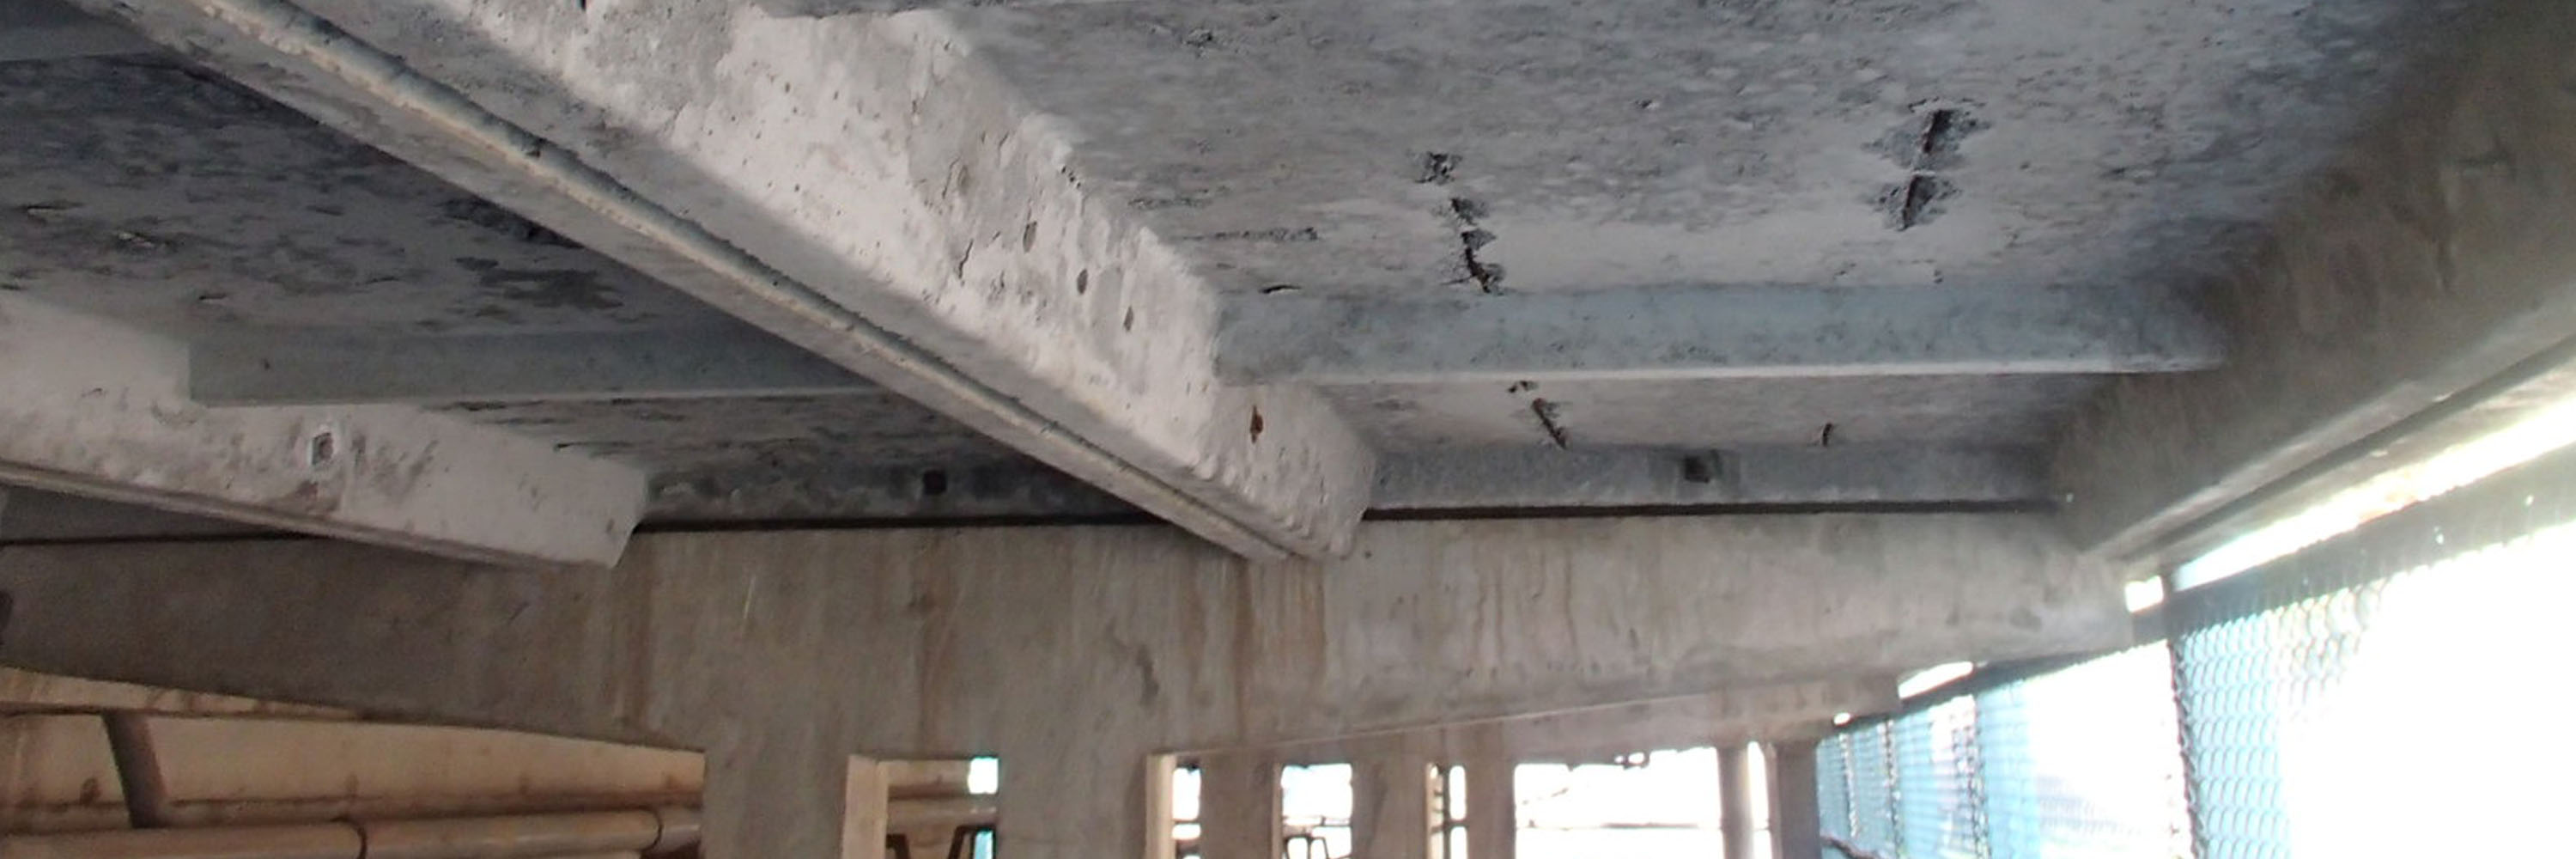 傷んだ鉄筋コンクリートを再生するリバンプ工法